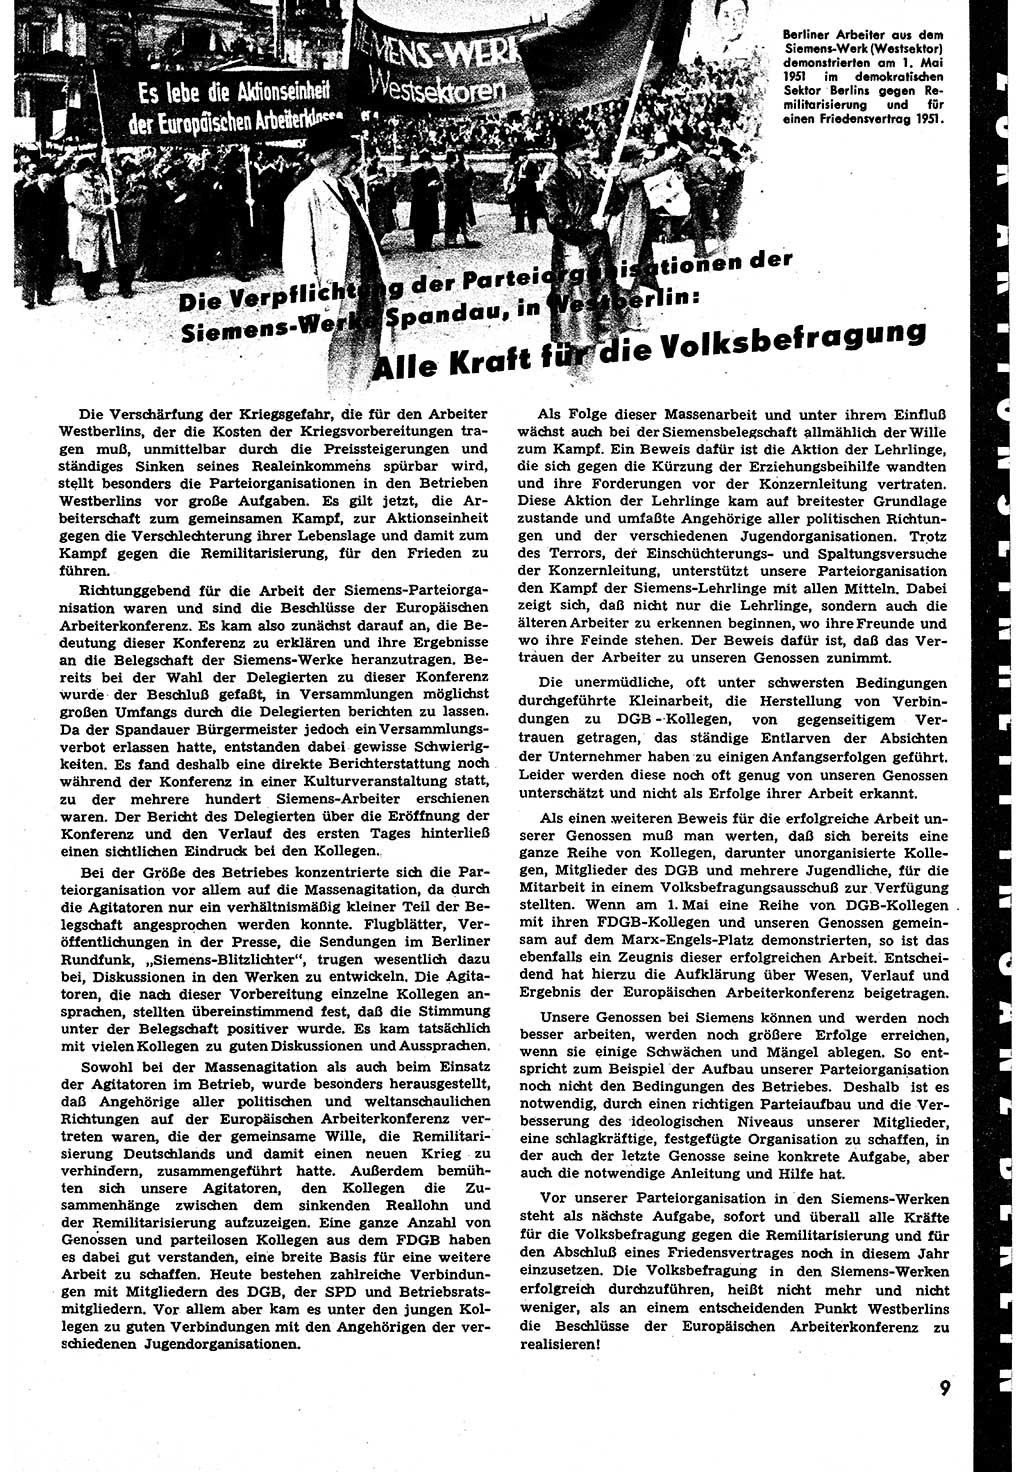 Neuer Weg (NW), Halbmonatsschrift für aktuelle Fragen der Arbeiterbewegung [Zentralkomitee (ZK) Sozialistische Einheitspartei Deutschlands (SED)], 6. Jahrgang [Deutsche Demokratische Republik (DDR)] 1951, Heft 9/9 (NW ZK SED DDR 1951, H. 9/9)